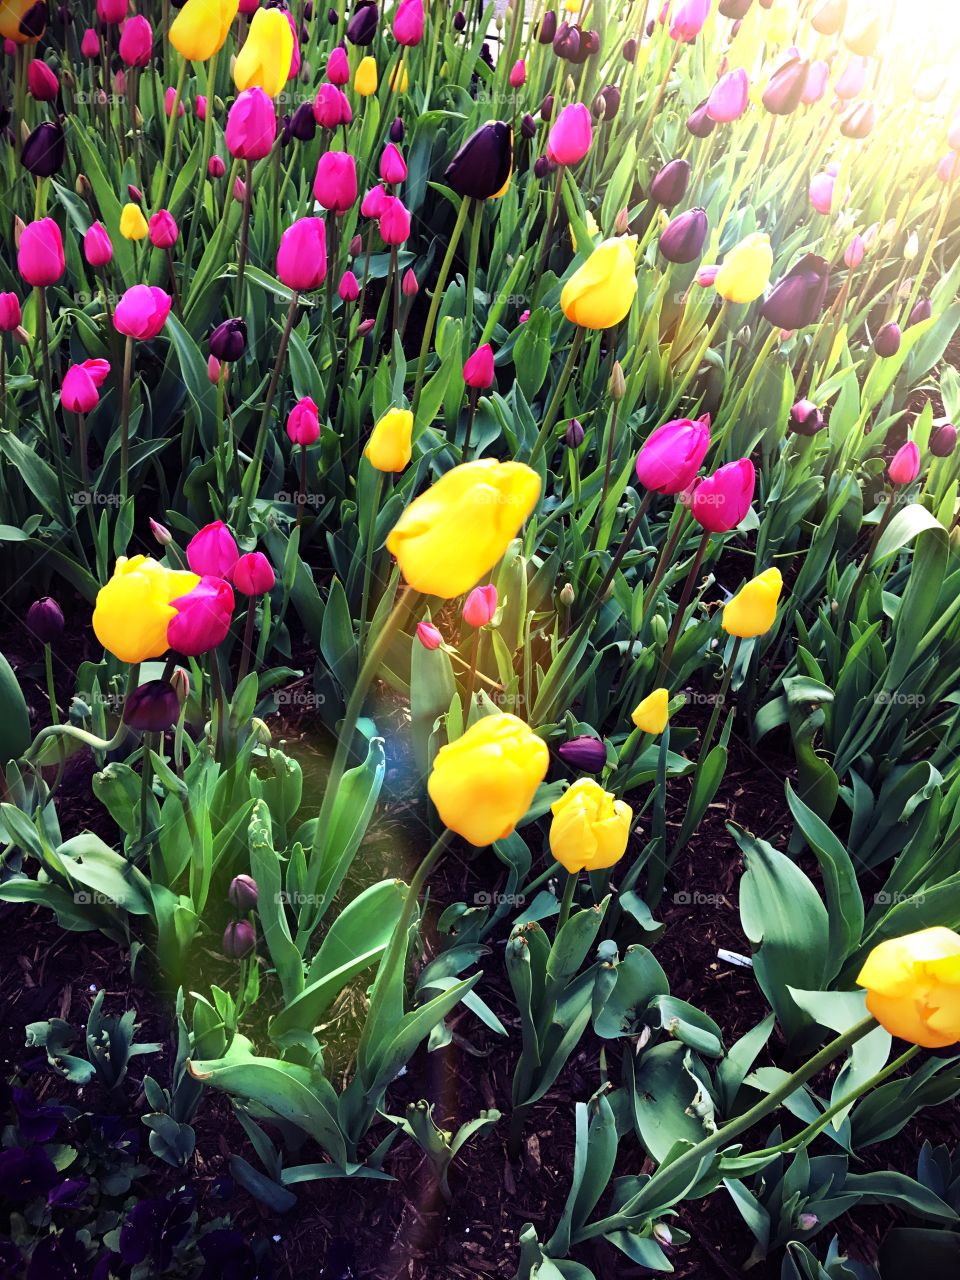 Field of Tulips 